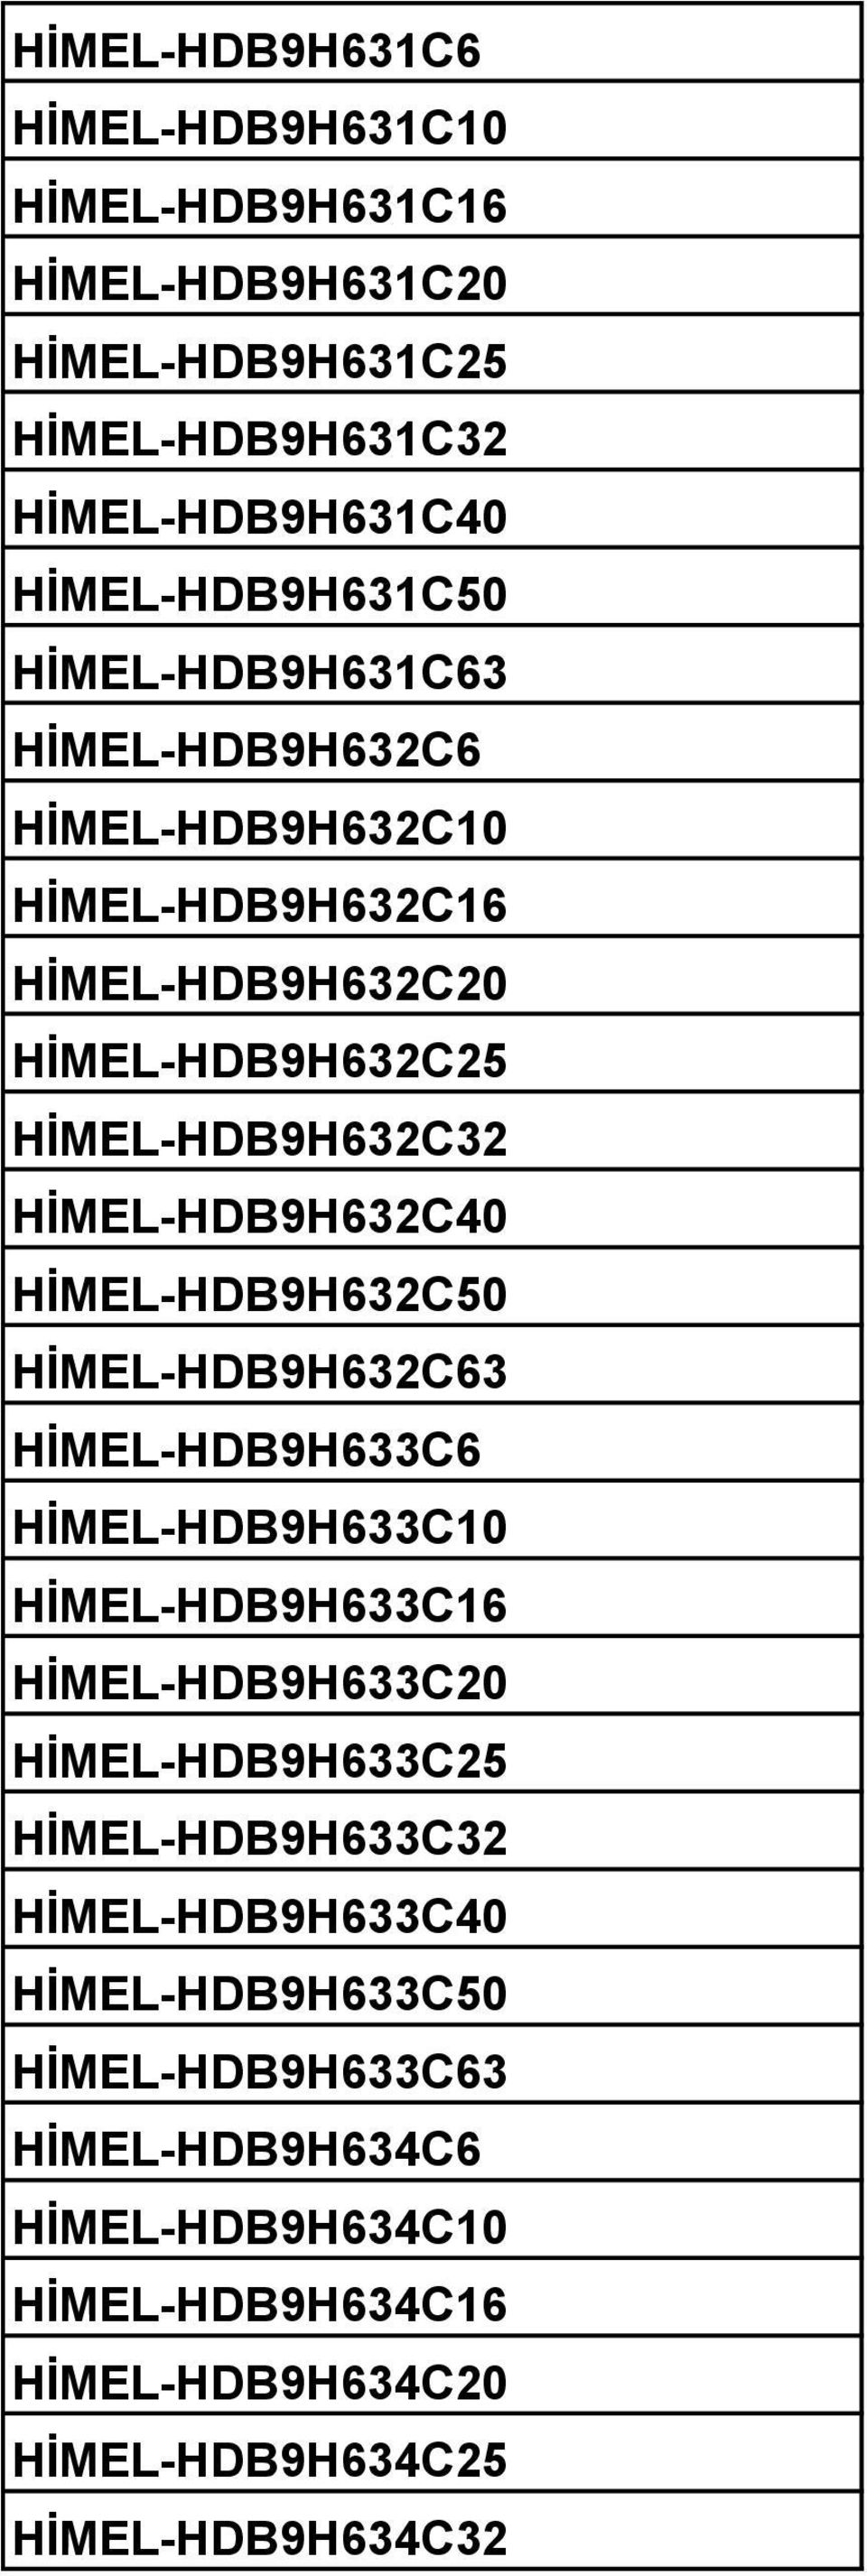 HİMEL-HDB9H632C50 HİMEL-HDB9H632C63 HİMEL-HDB9H633C6 HİMEL-HDB9H633C10 HİMEL-HDB9H633C16 HİMEL-HDB9H633C20 HİMEL-HDB9H633C25 HİMEL-HDB9H633C32